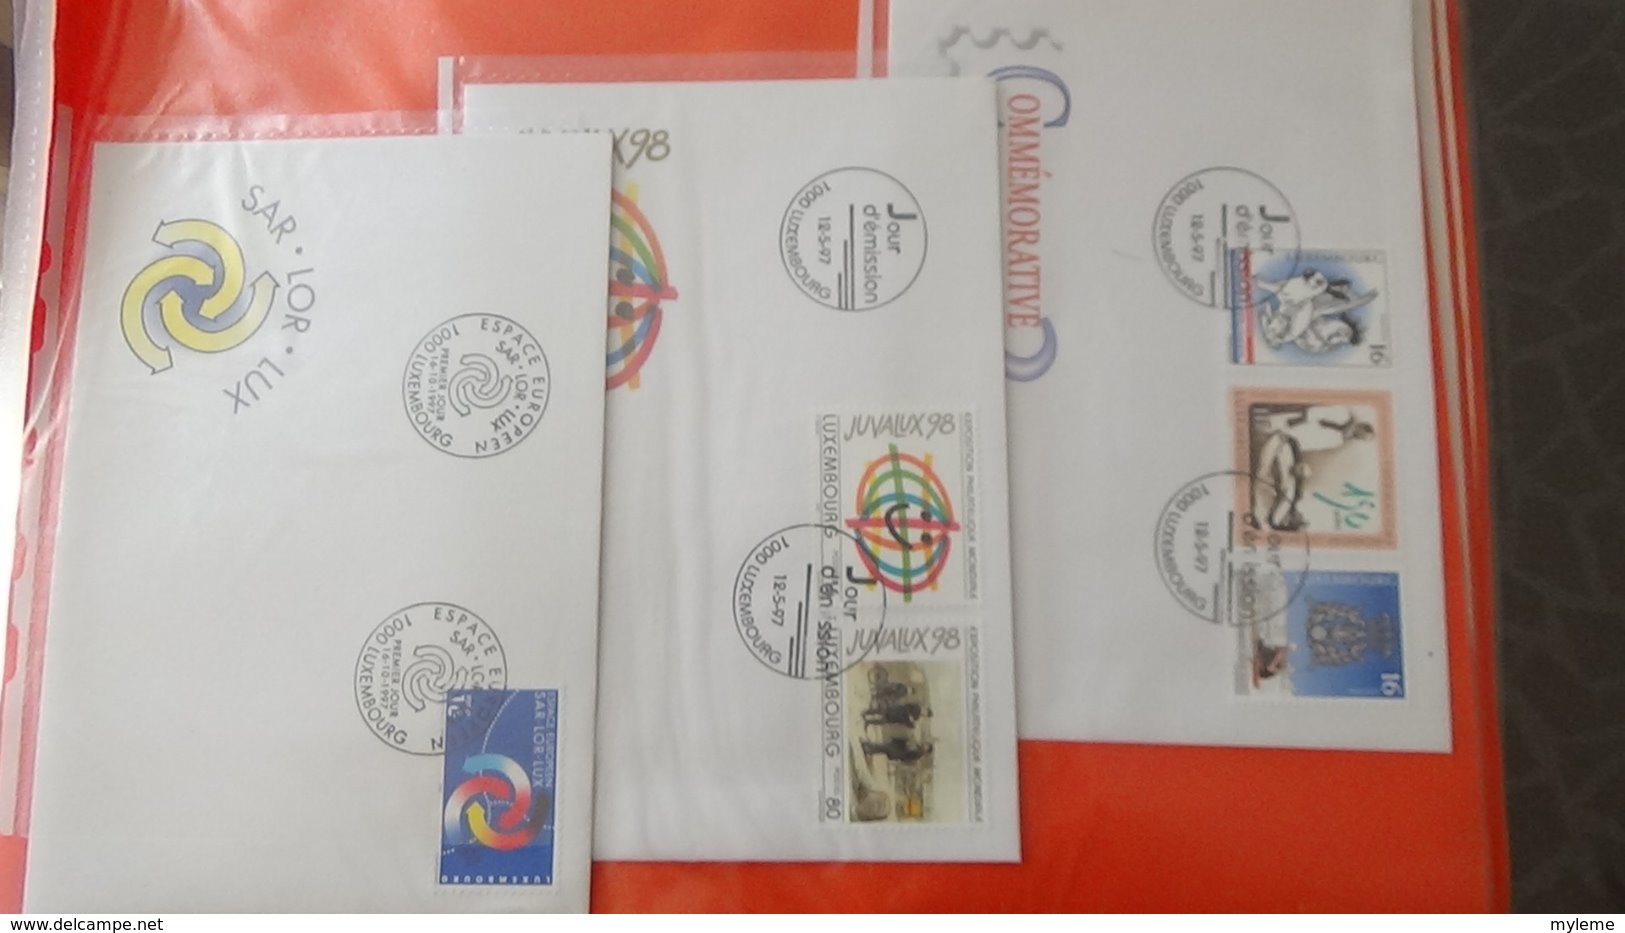 Dispersion d'une collection d'enveloppe 1er jour et autres dont 196 du LUXEMBOURG